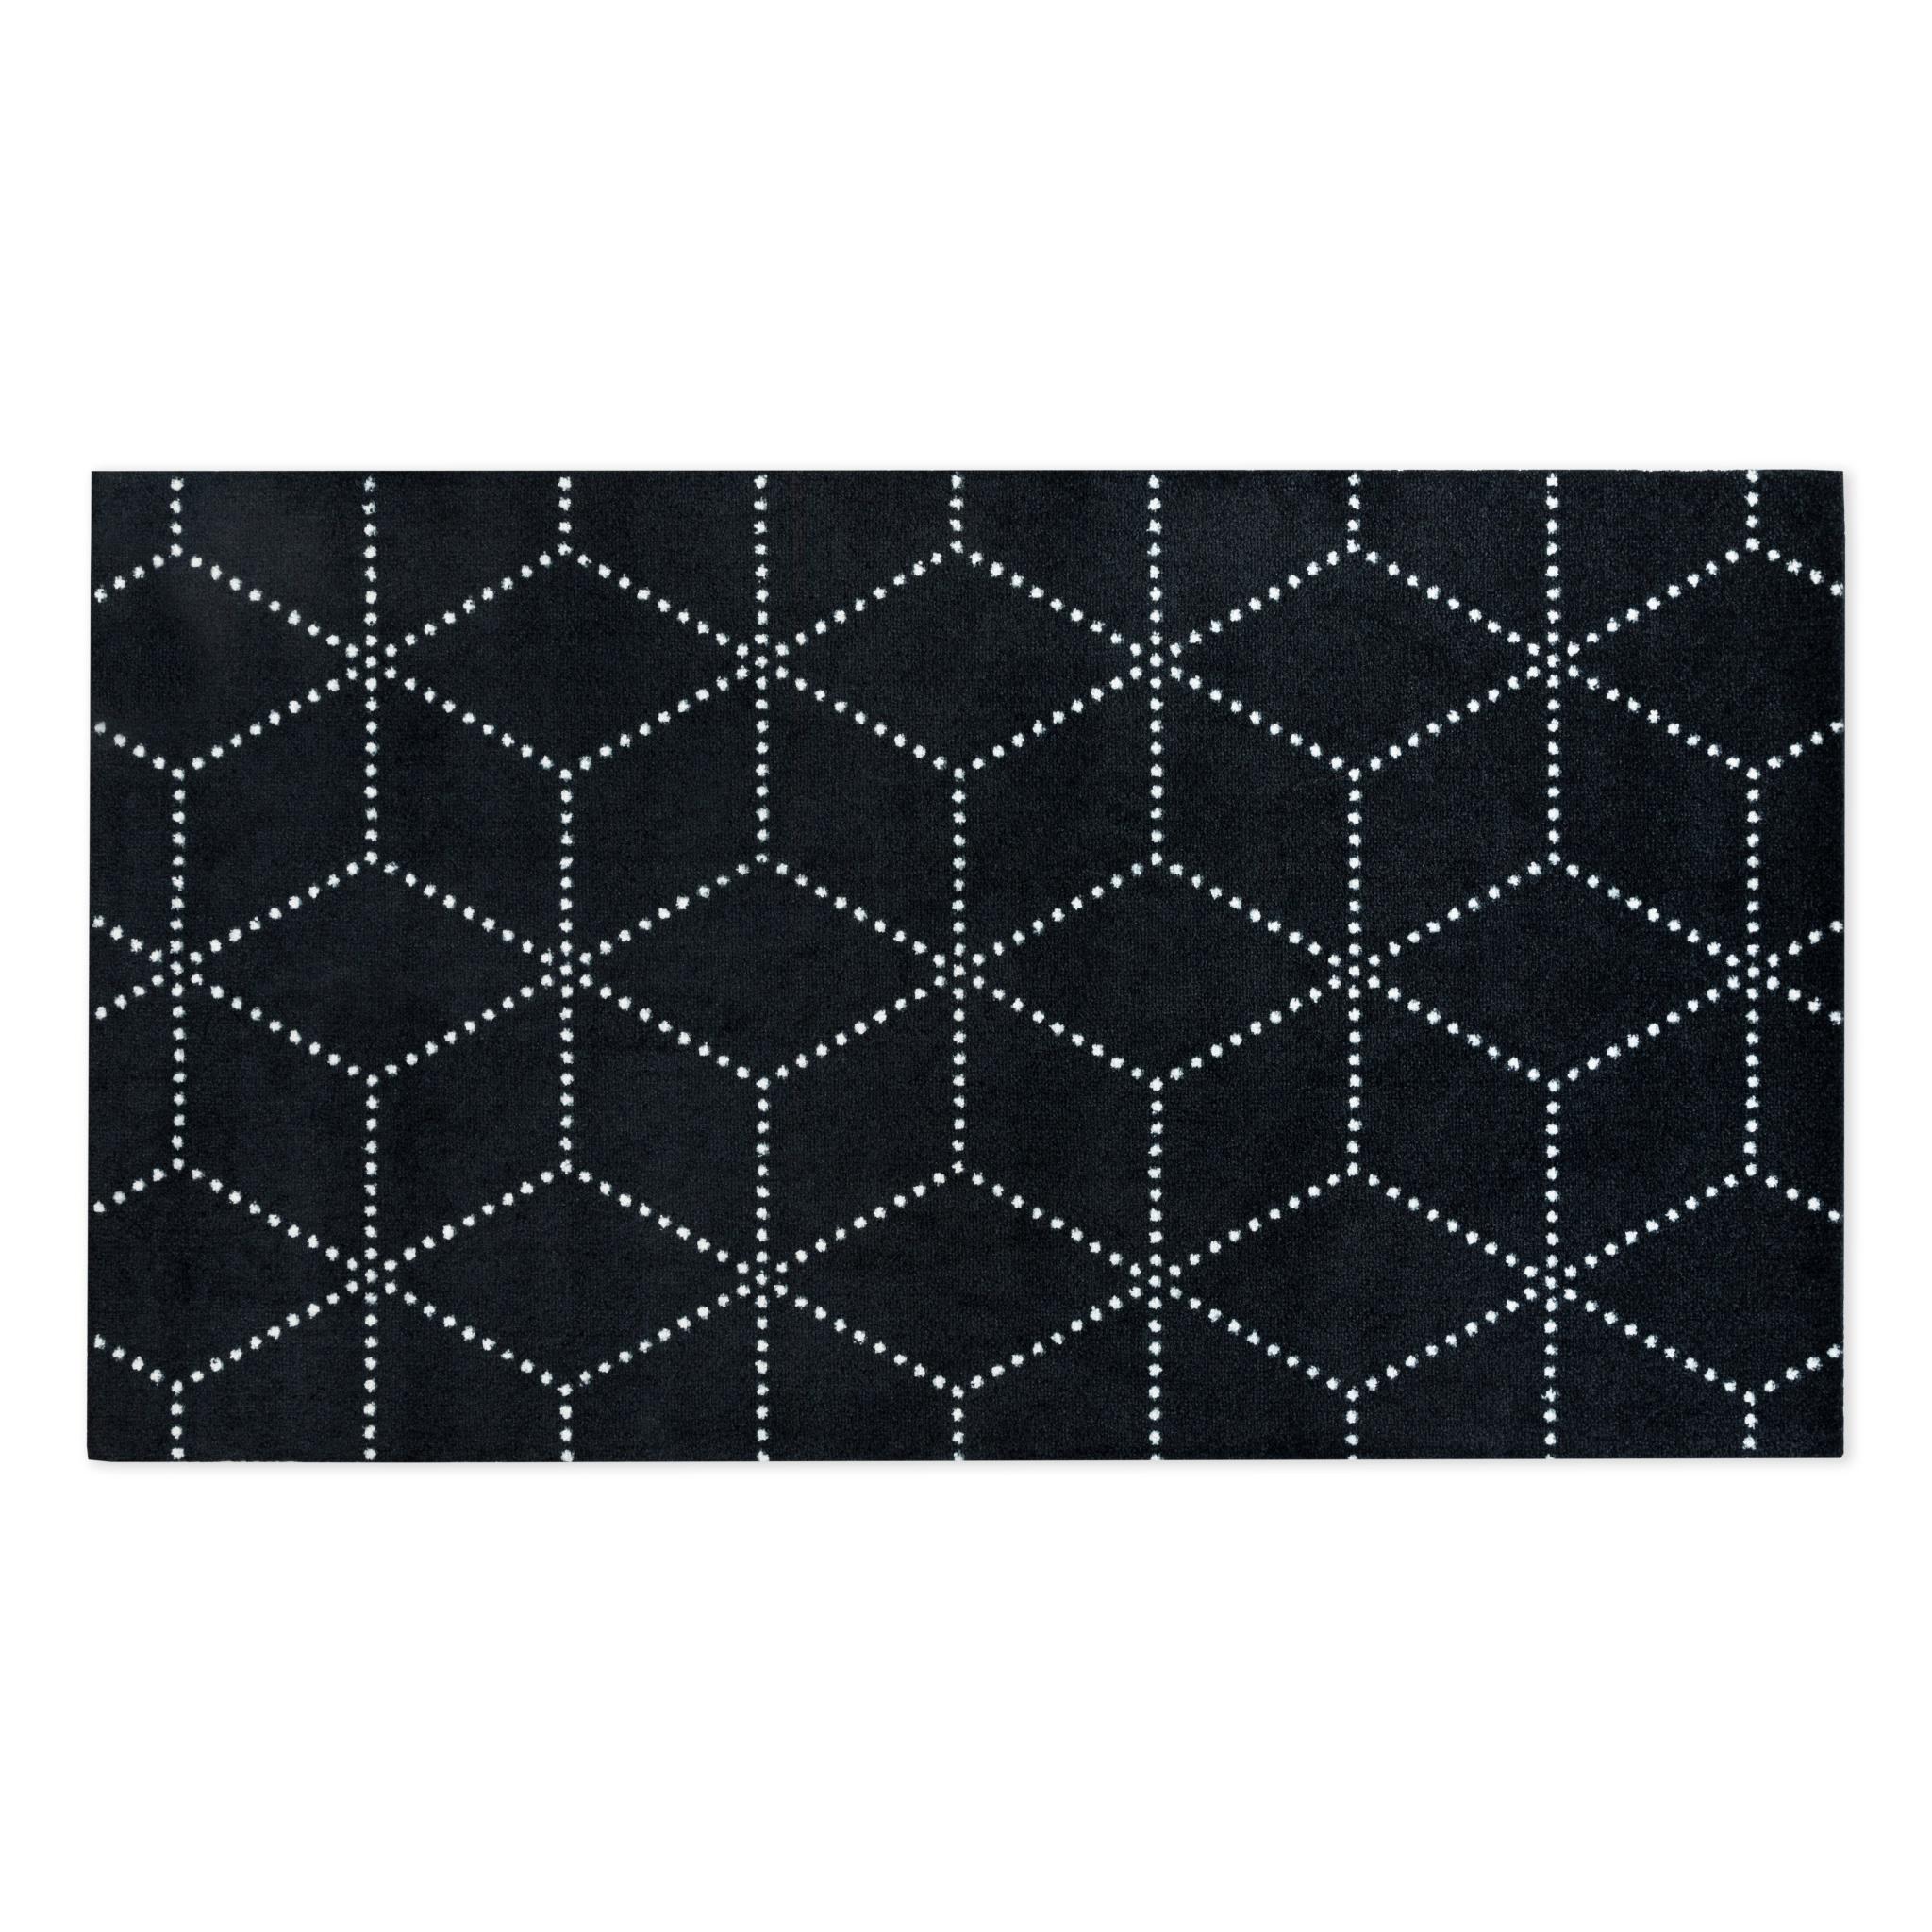 Heymat Doormat Hagl Black, 85x150cm